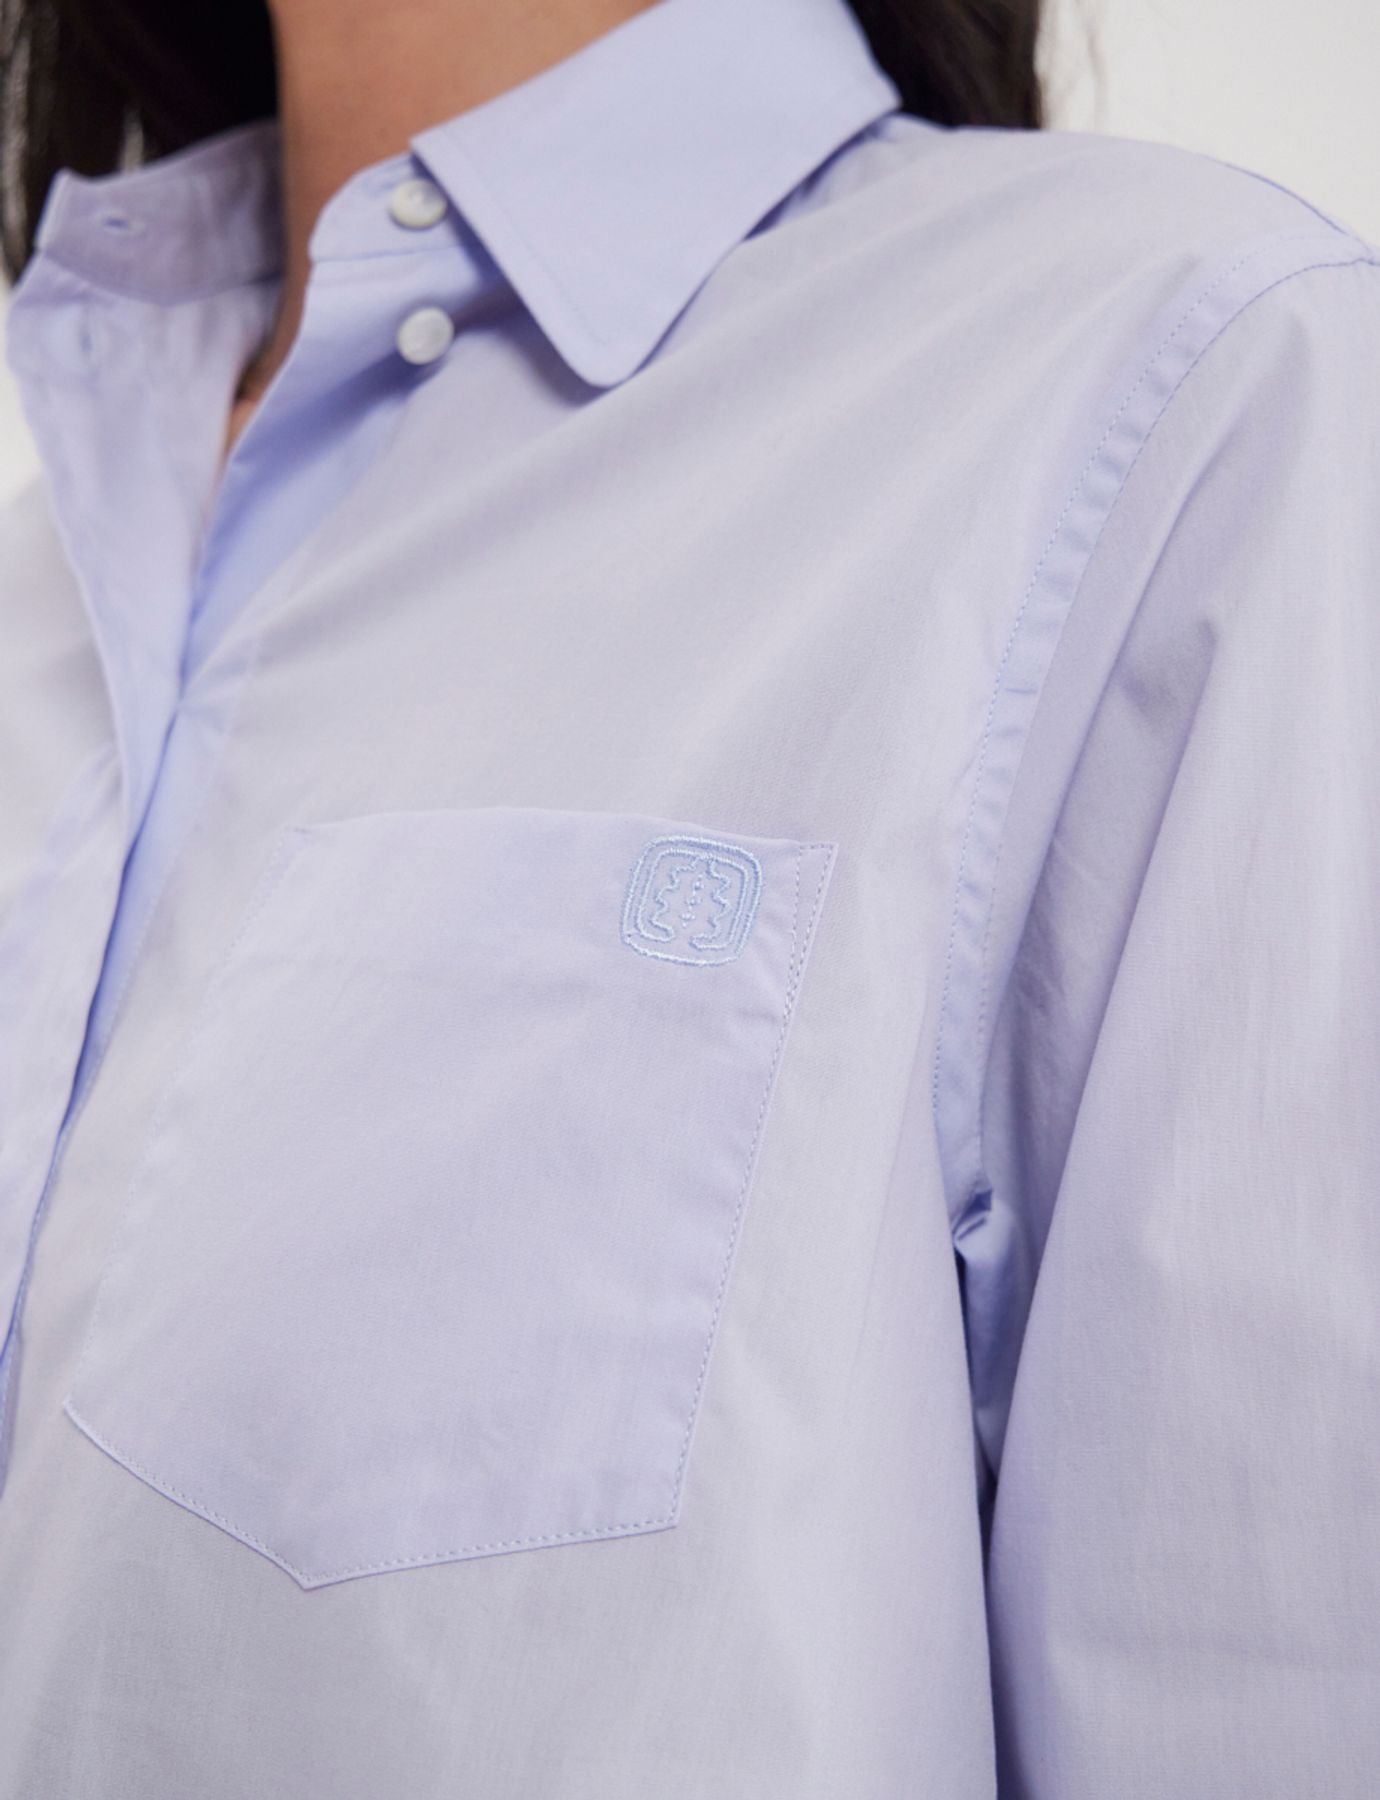 shirt-maureen-cotton-clear-blue